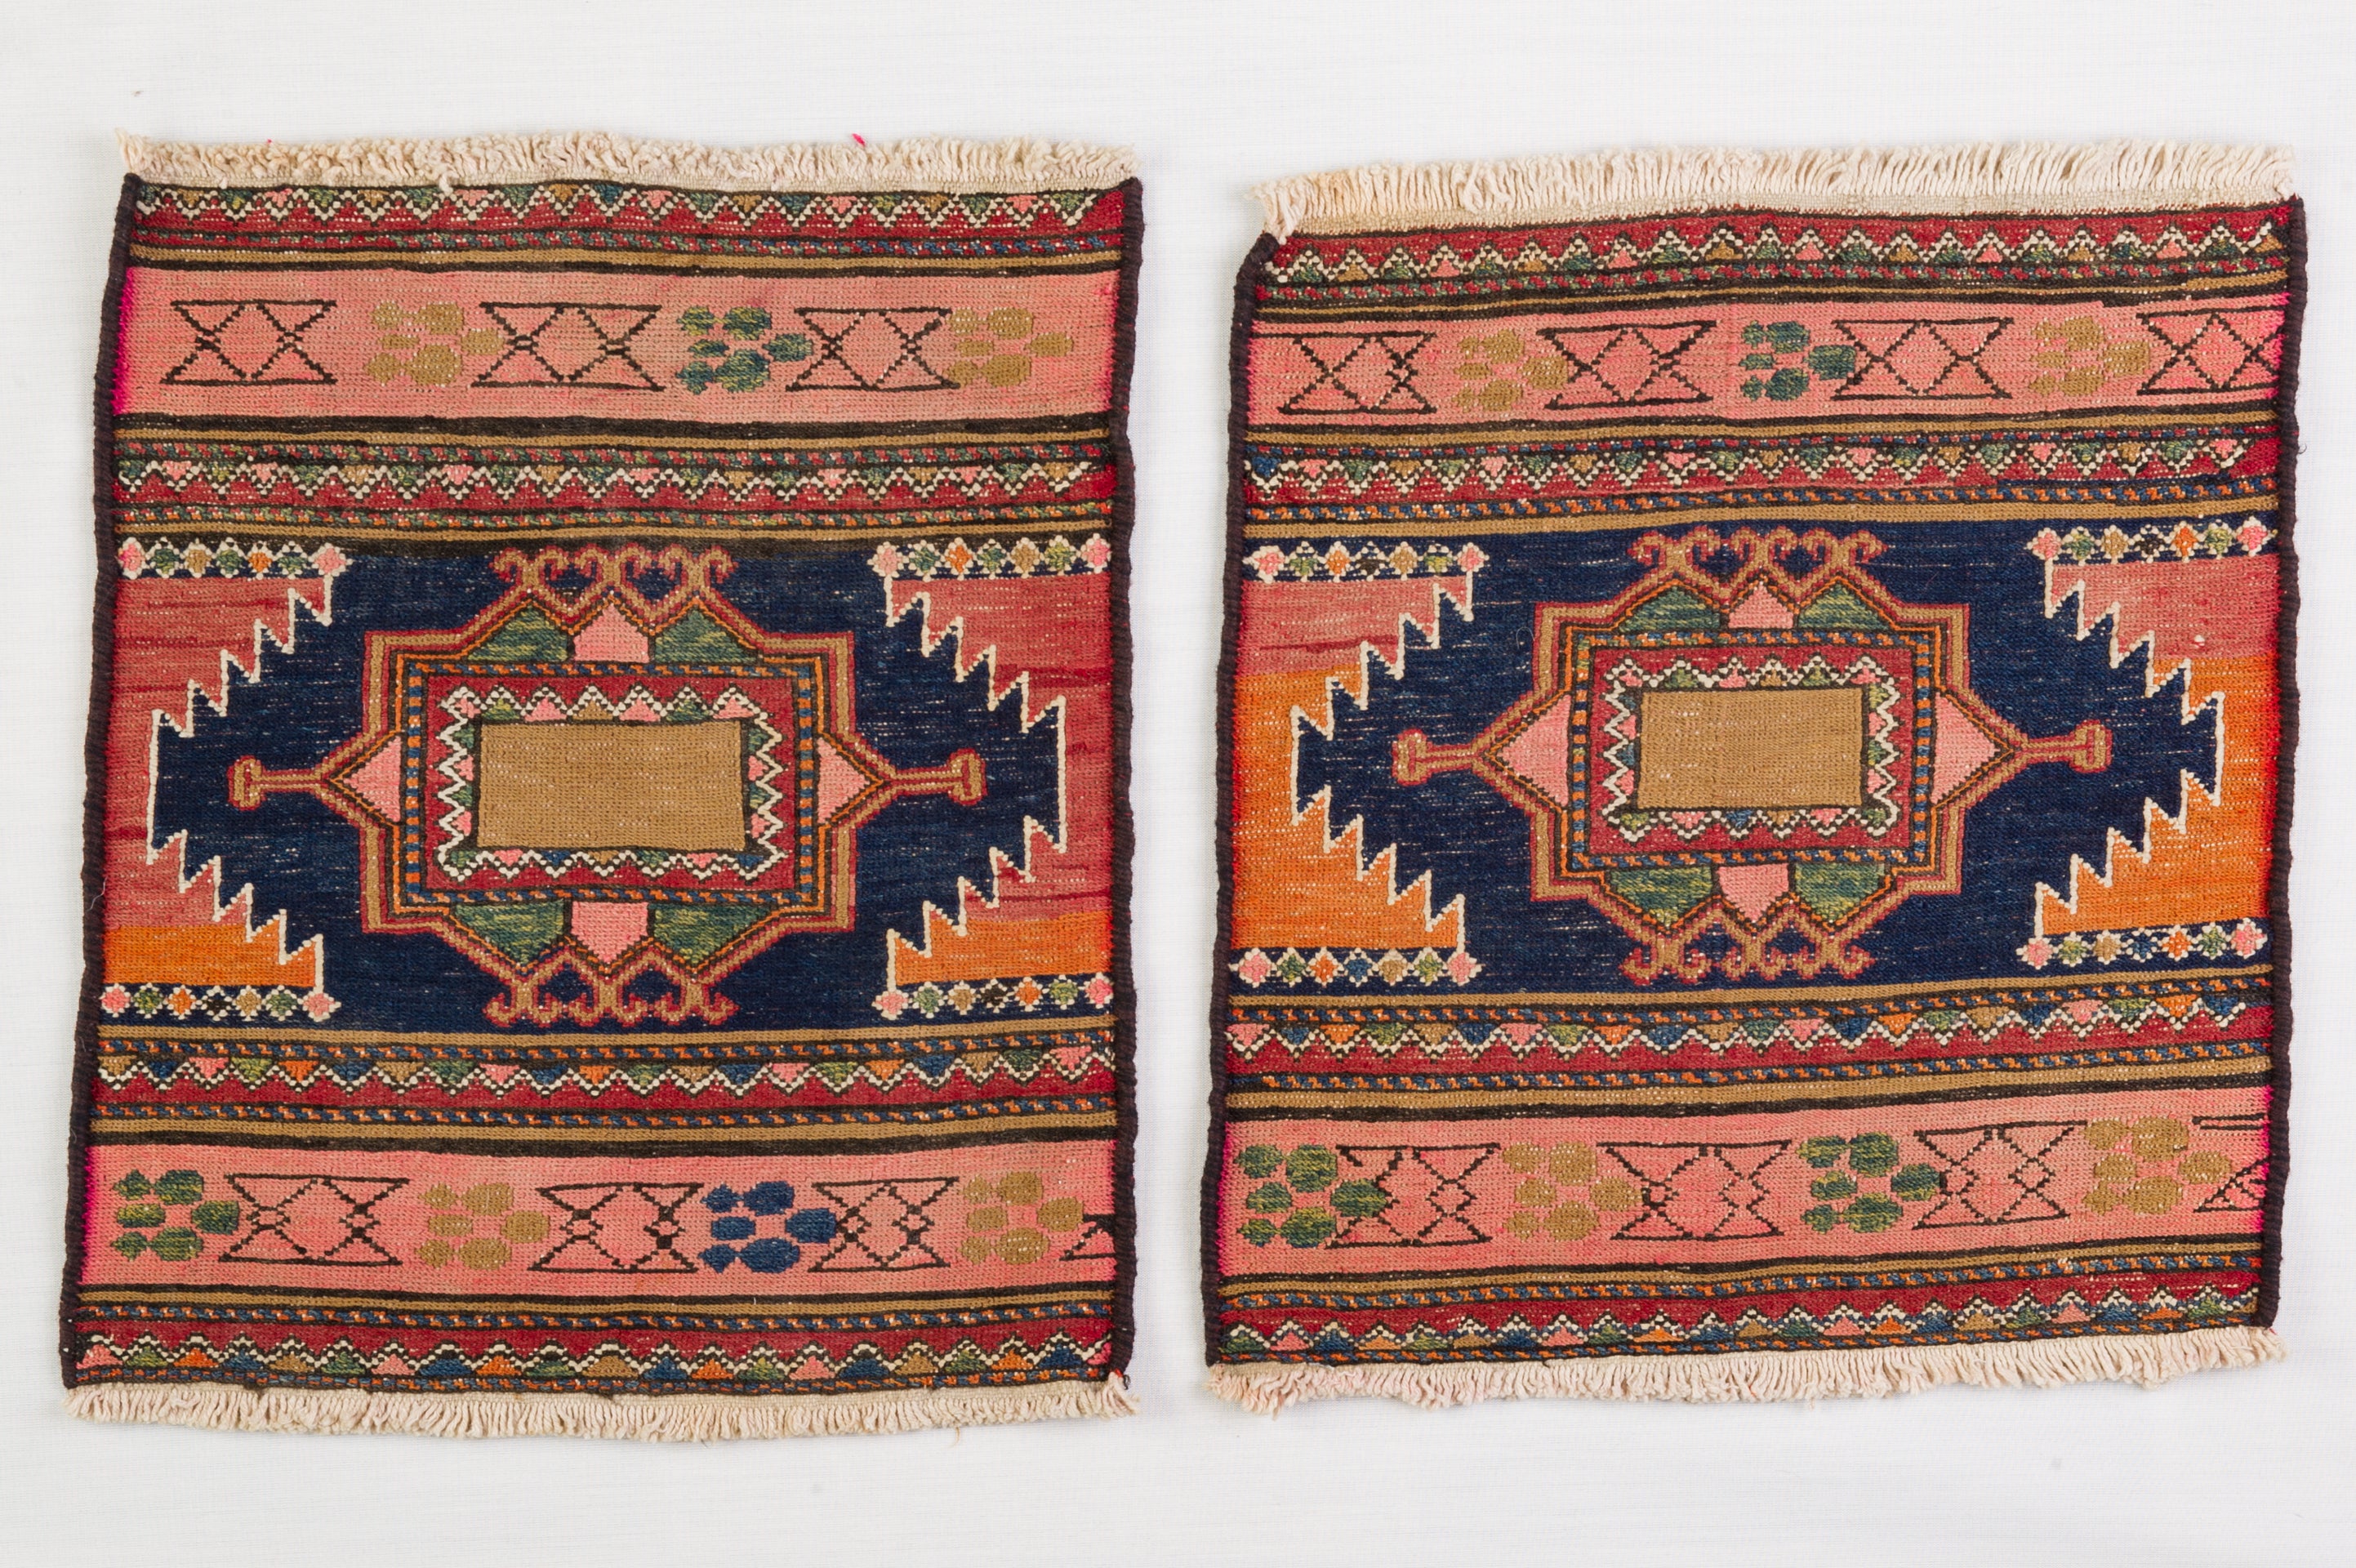 Nr. 313 - Diese Satteltaschen-Fassaden wurden auf einem Webstuhl mit Kett- und Schussfäden hergestellt; es handelt sich nicht um zwei einfache Teppiche, sondern um die Überreste einer alten nomadischen Satteltasche aus dem Kaukasusgebirge. Hohe